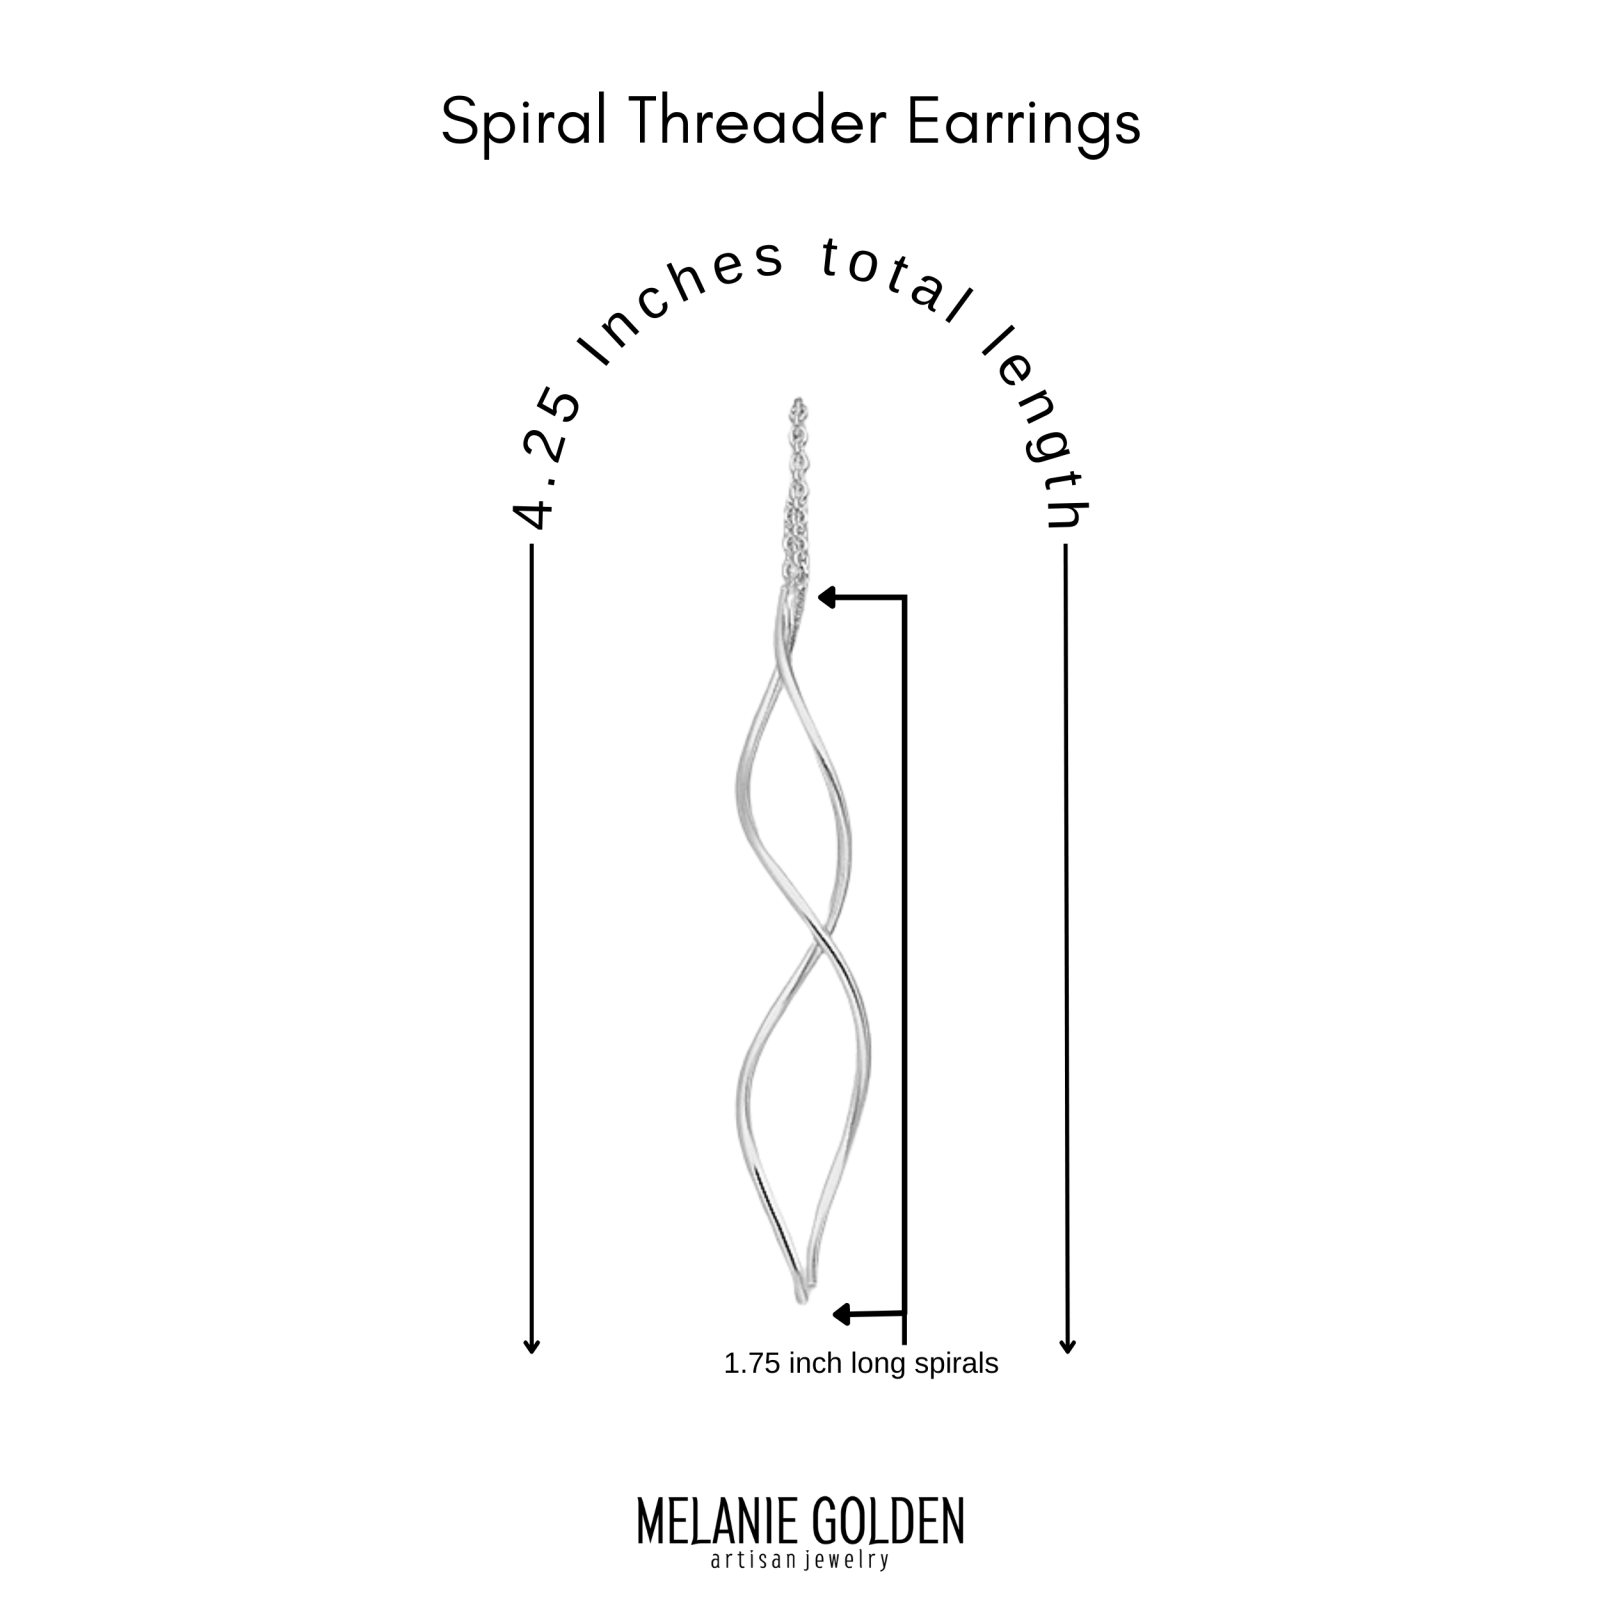 Spiral Threader Chain Earrings - Melanie Golden Jewelry - dangle earrings, earrings, threader, threader earrings